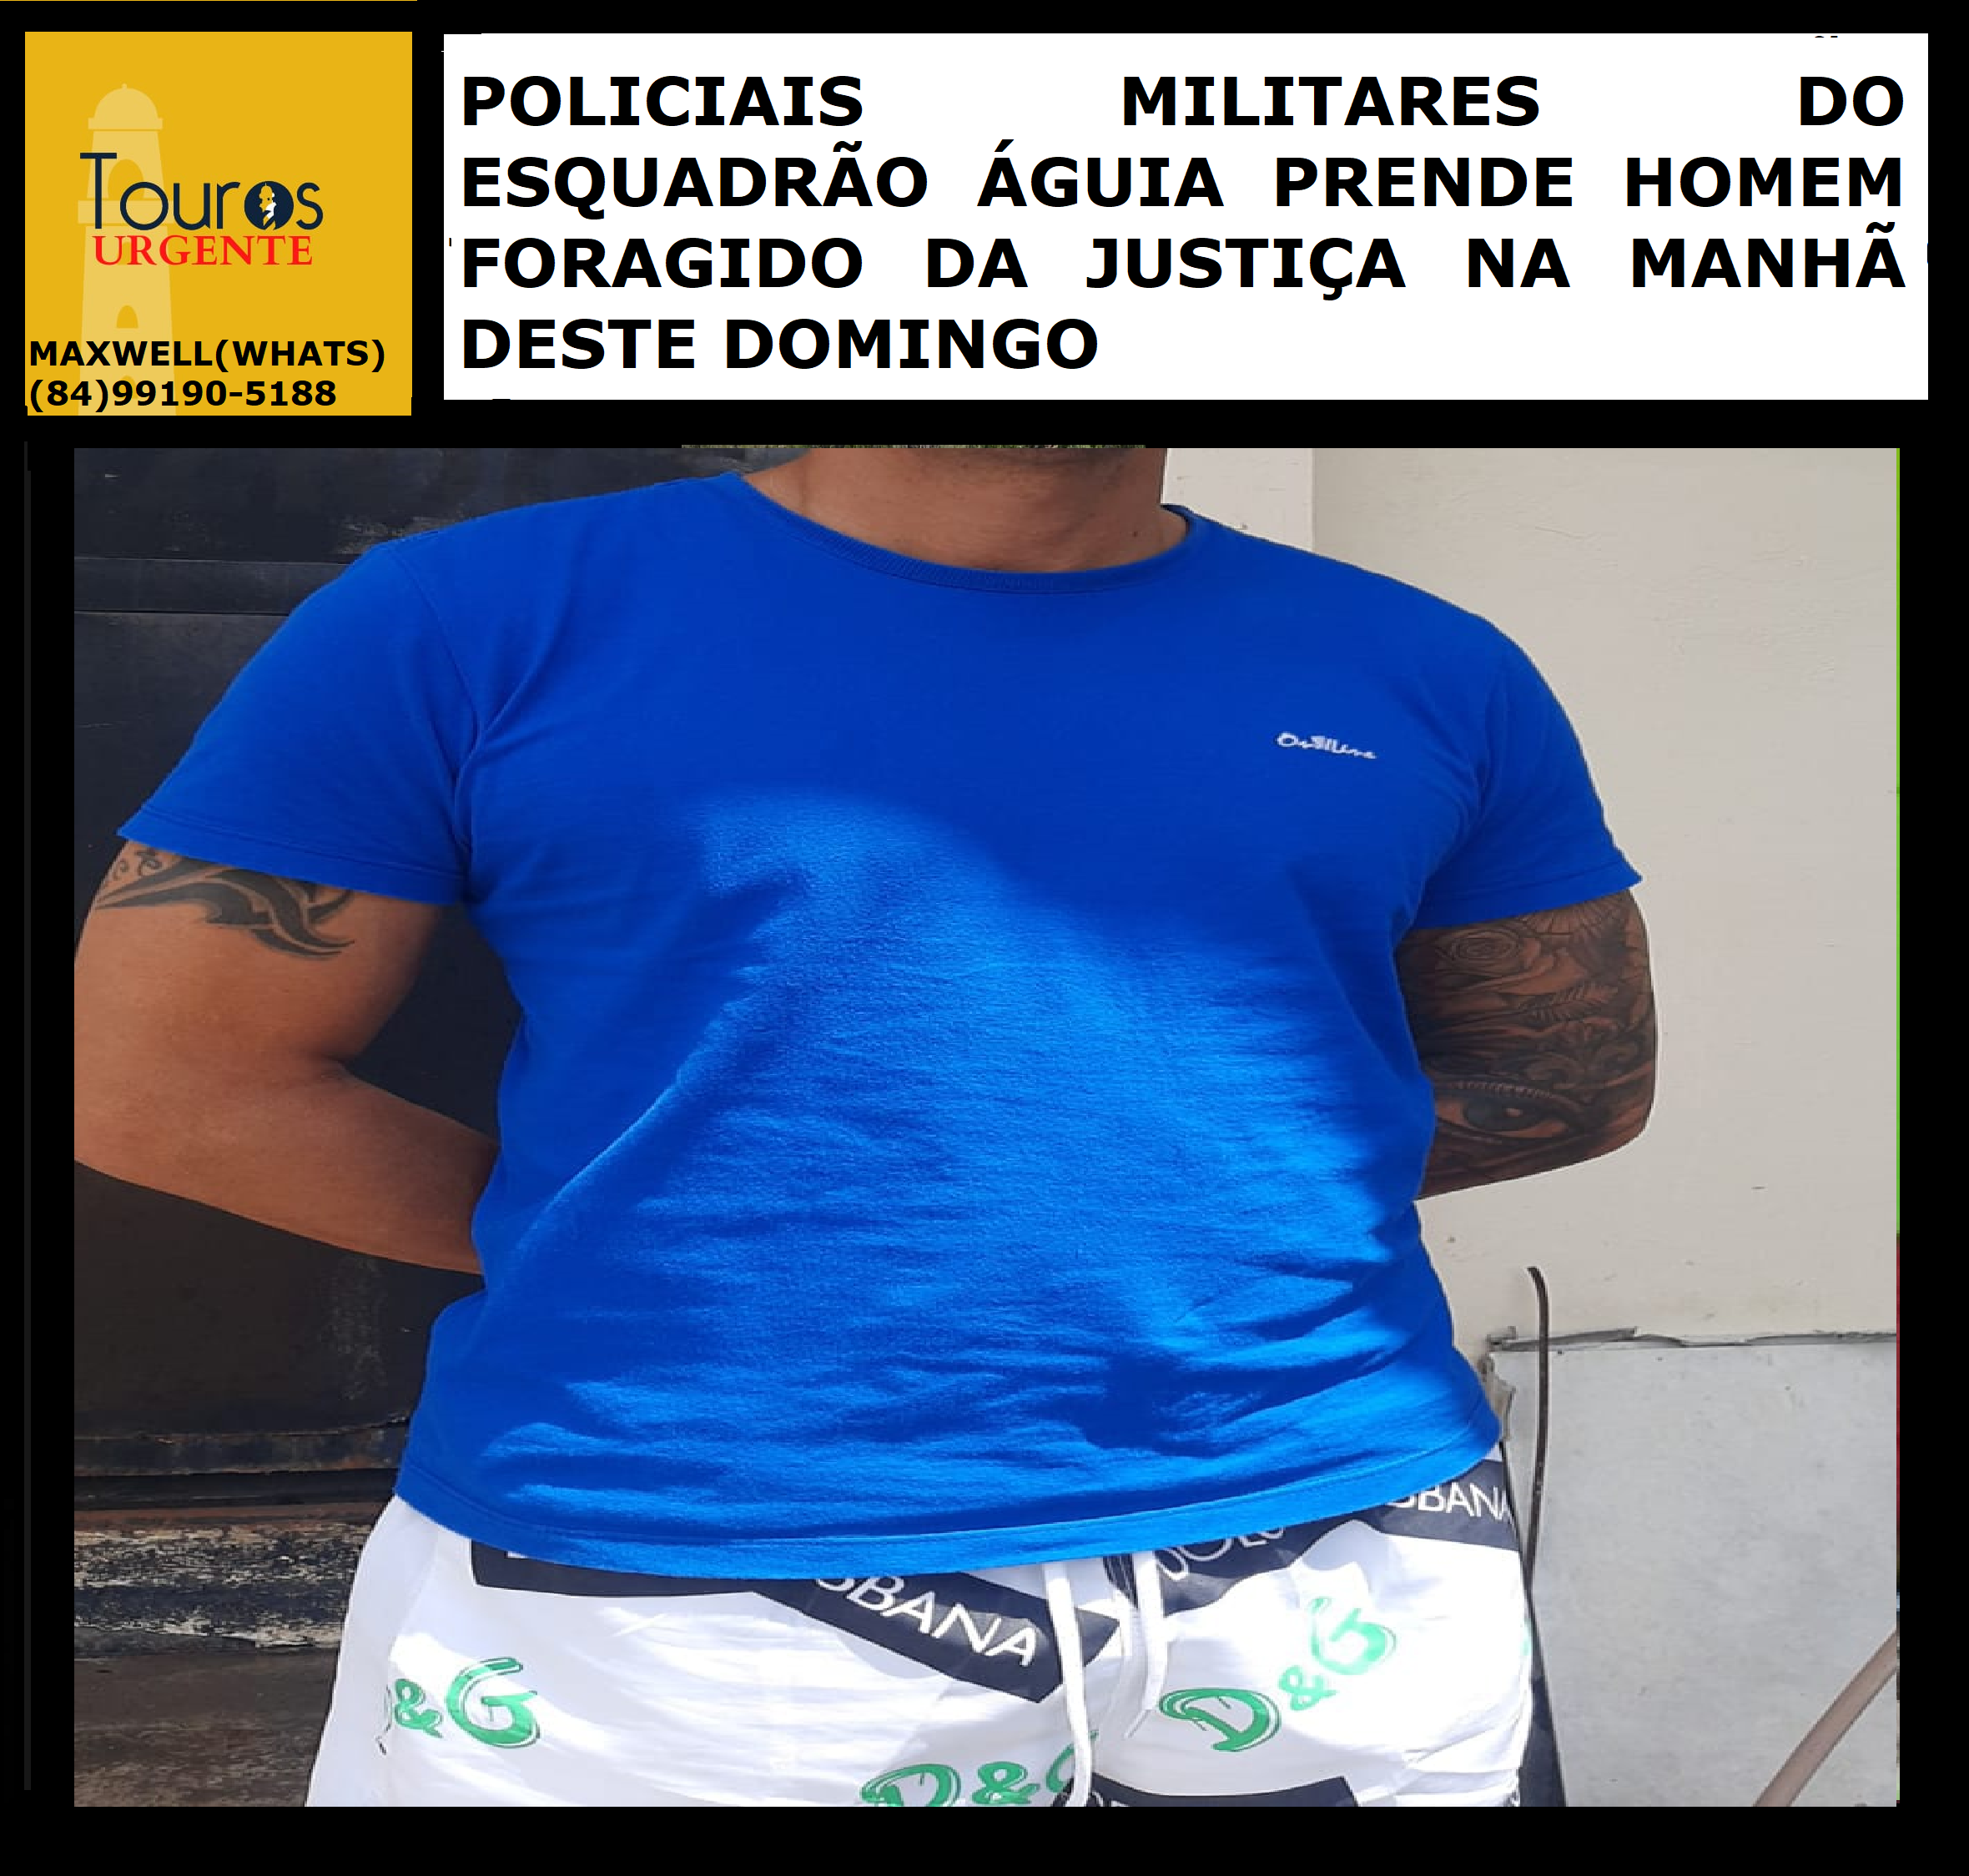 ​POLICIAIS MILITARES DO ESQUADRÃO ÁGUIA PRENDE HOMEM FORAGIDO DA....